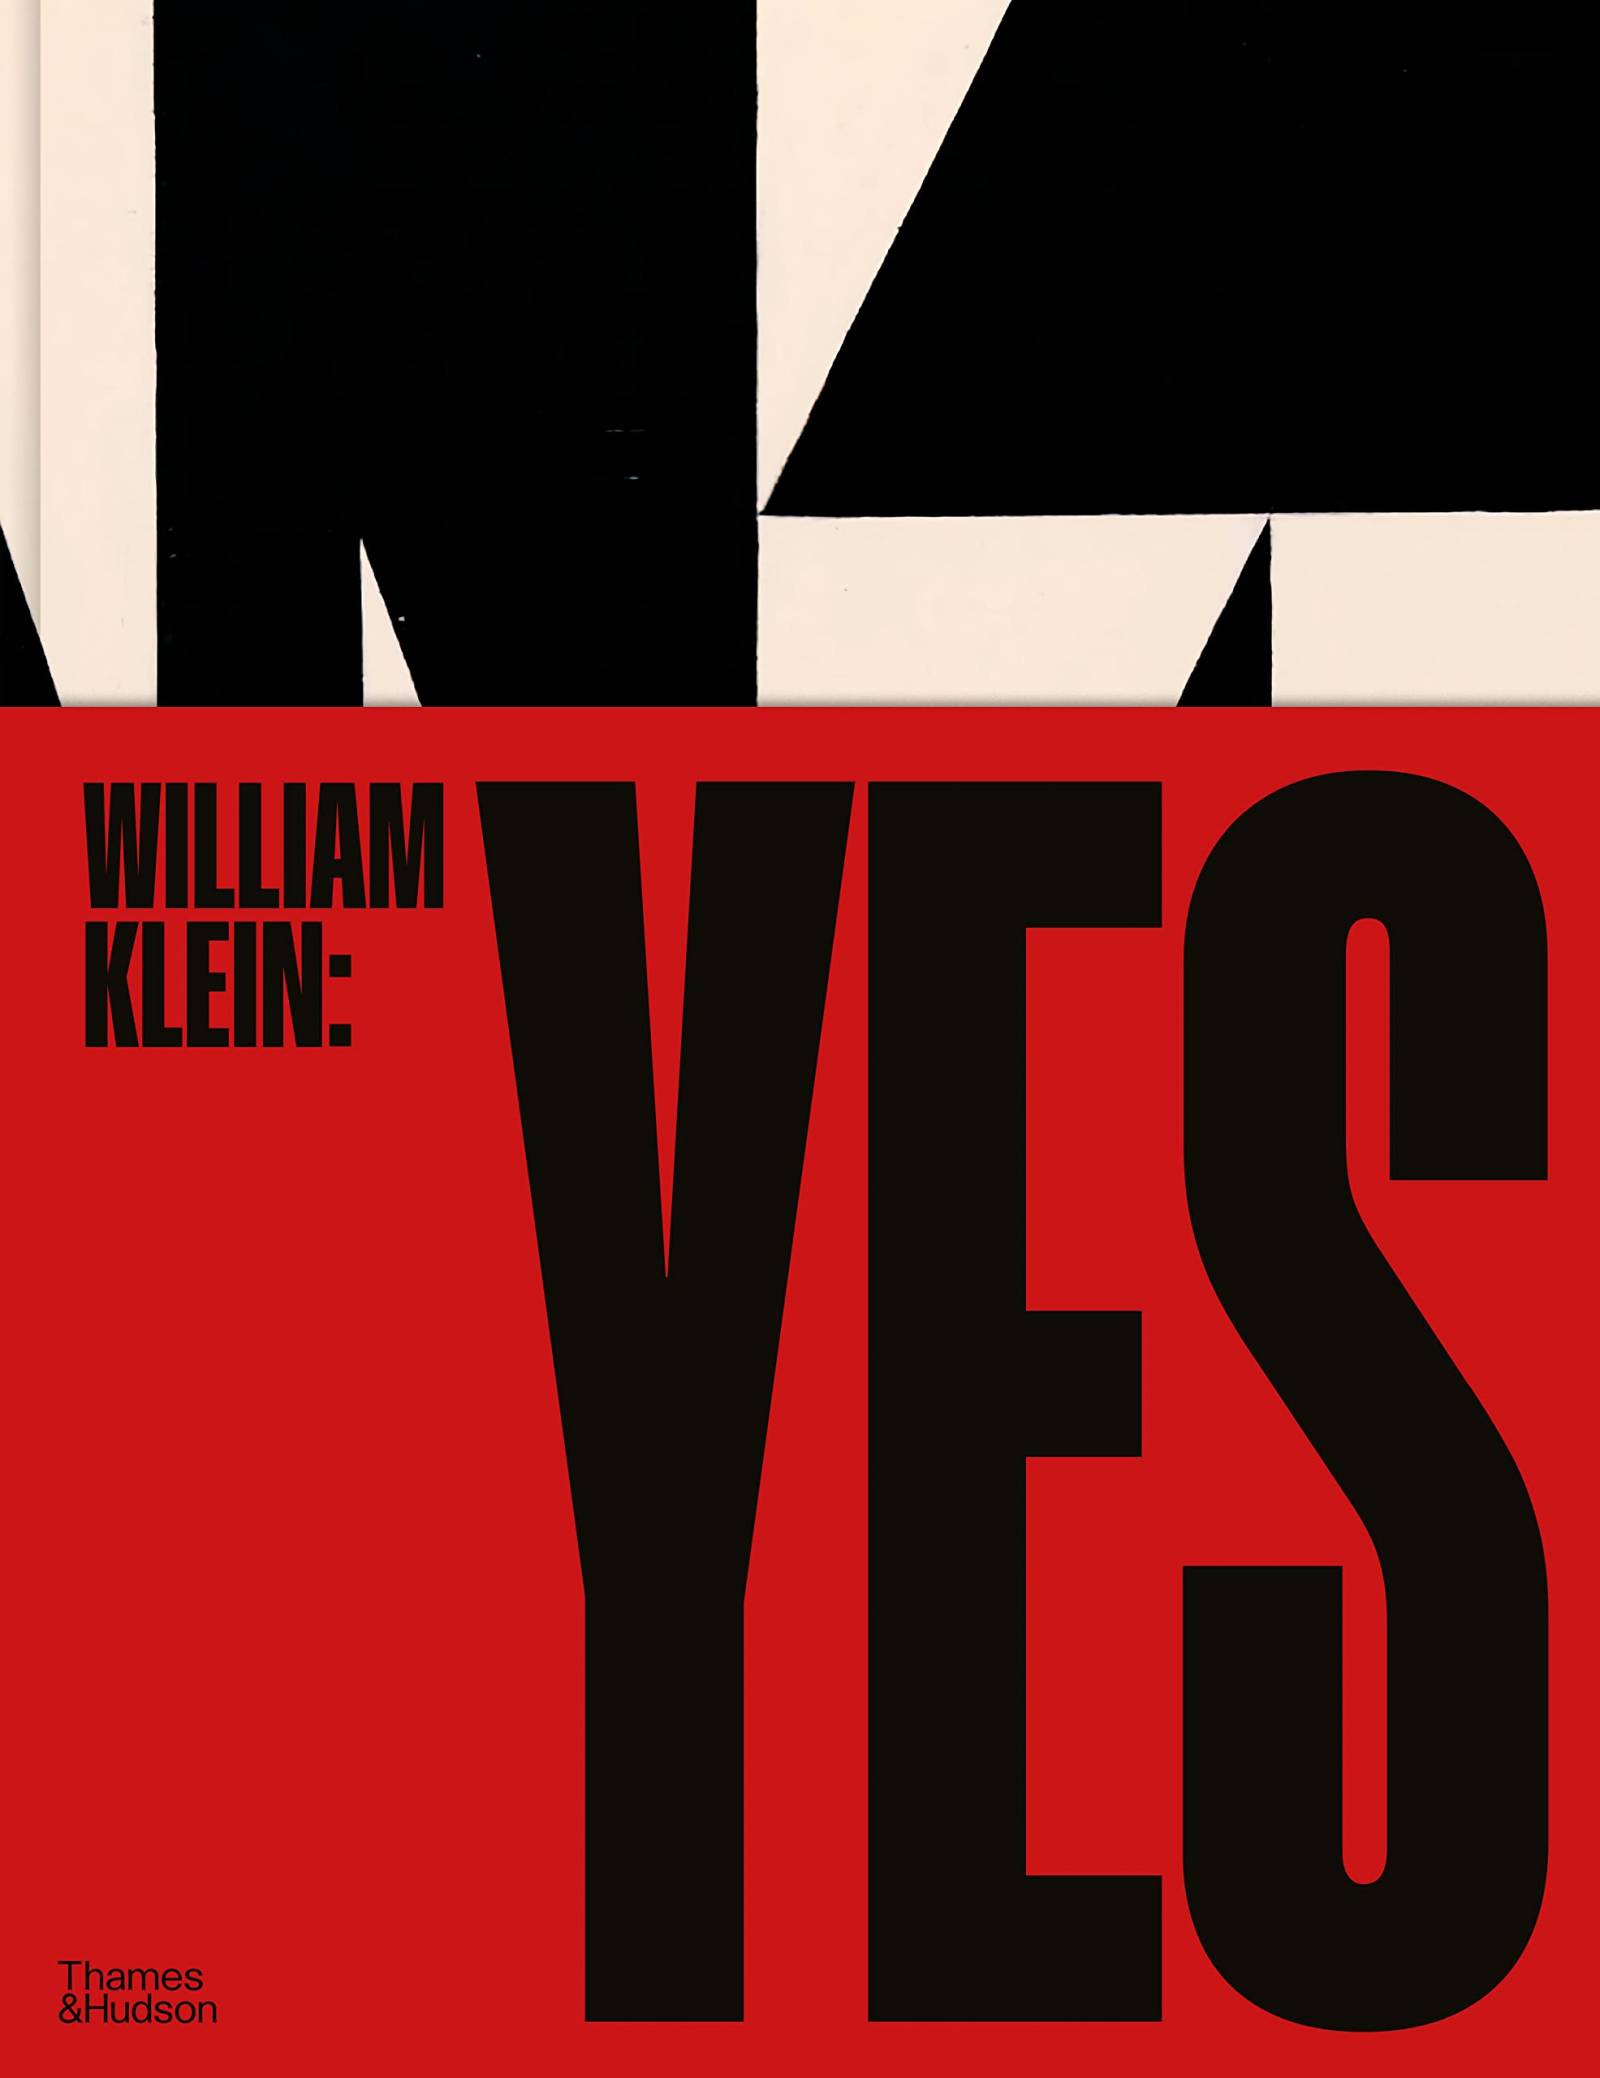 „William Klein: Yes”, William Klein, David Campany (Fot. Thames & Hudson)